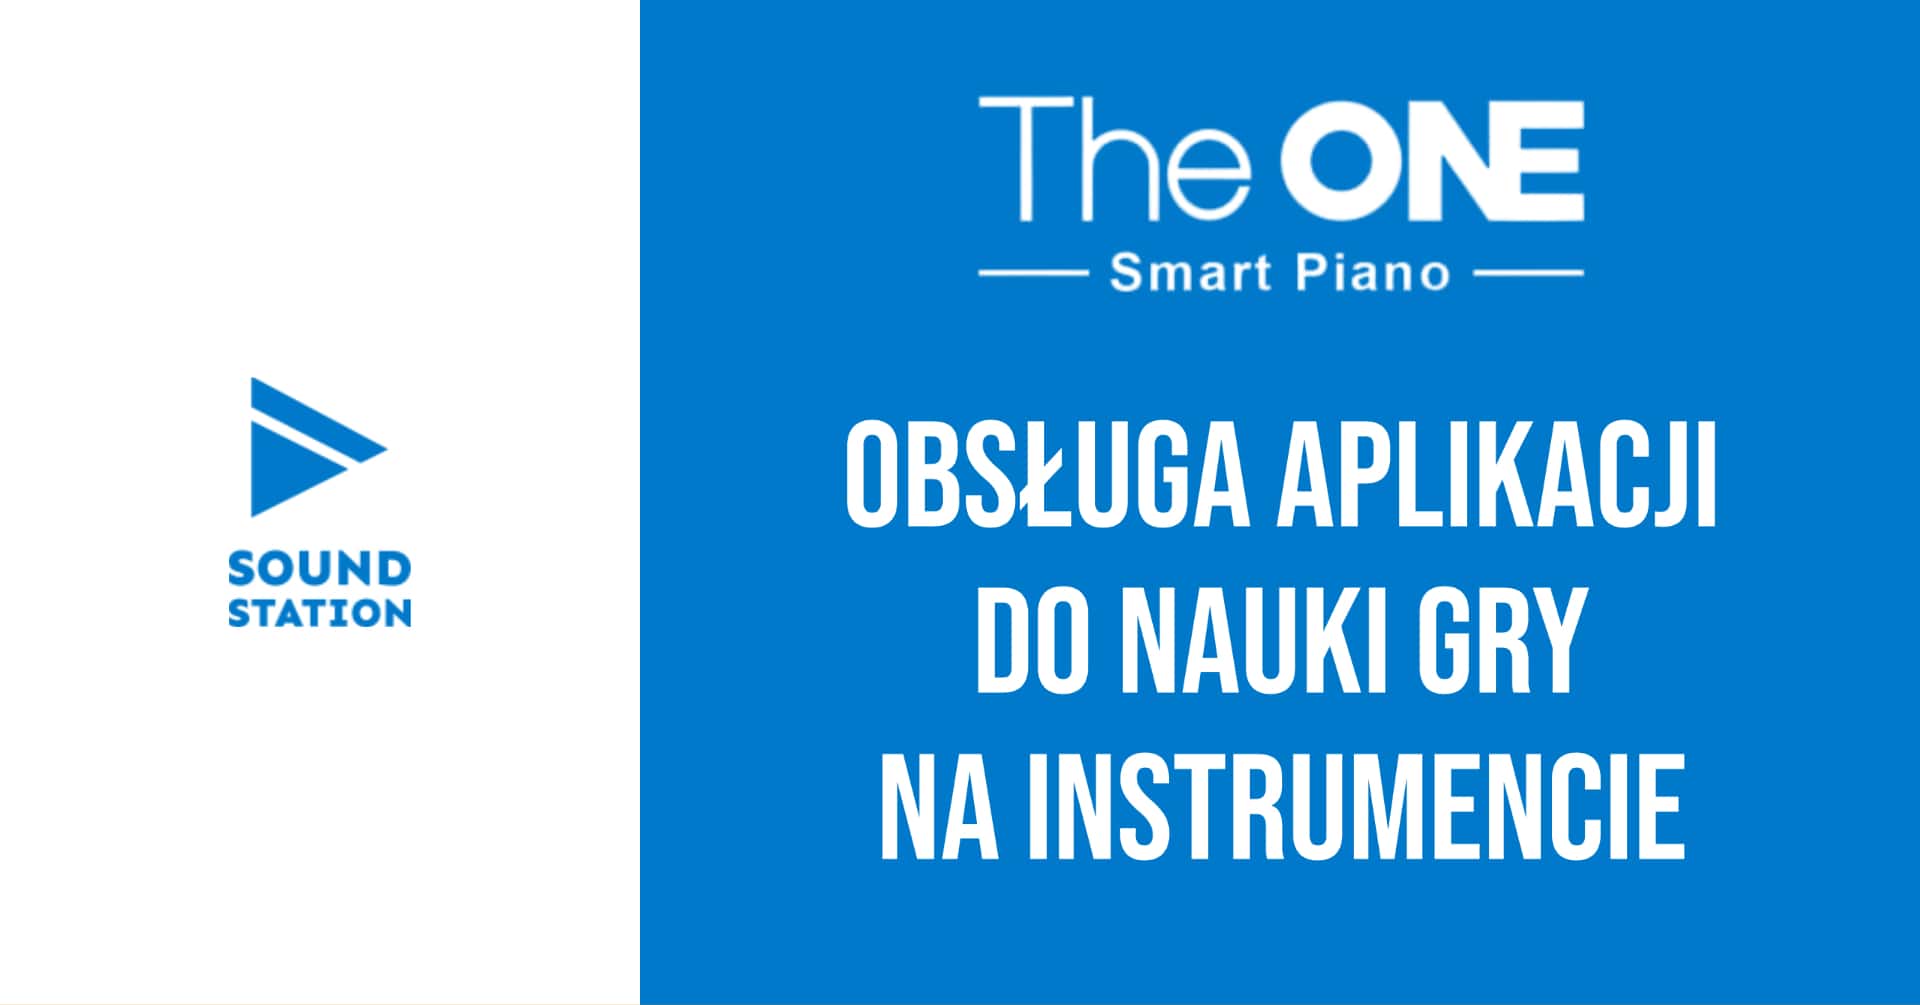 The One: obsługa aplikacji do nauki gry na instrumencie